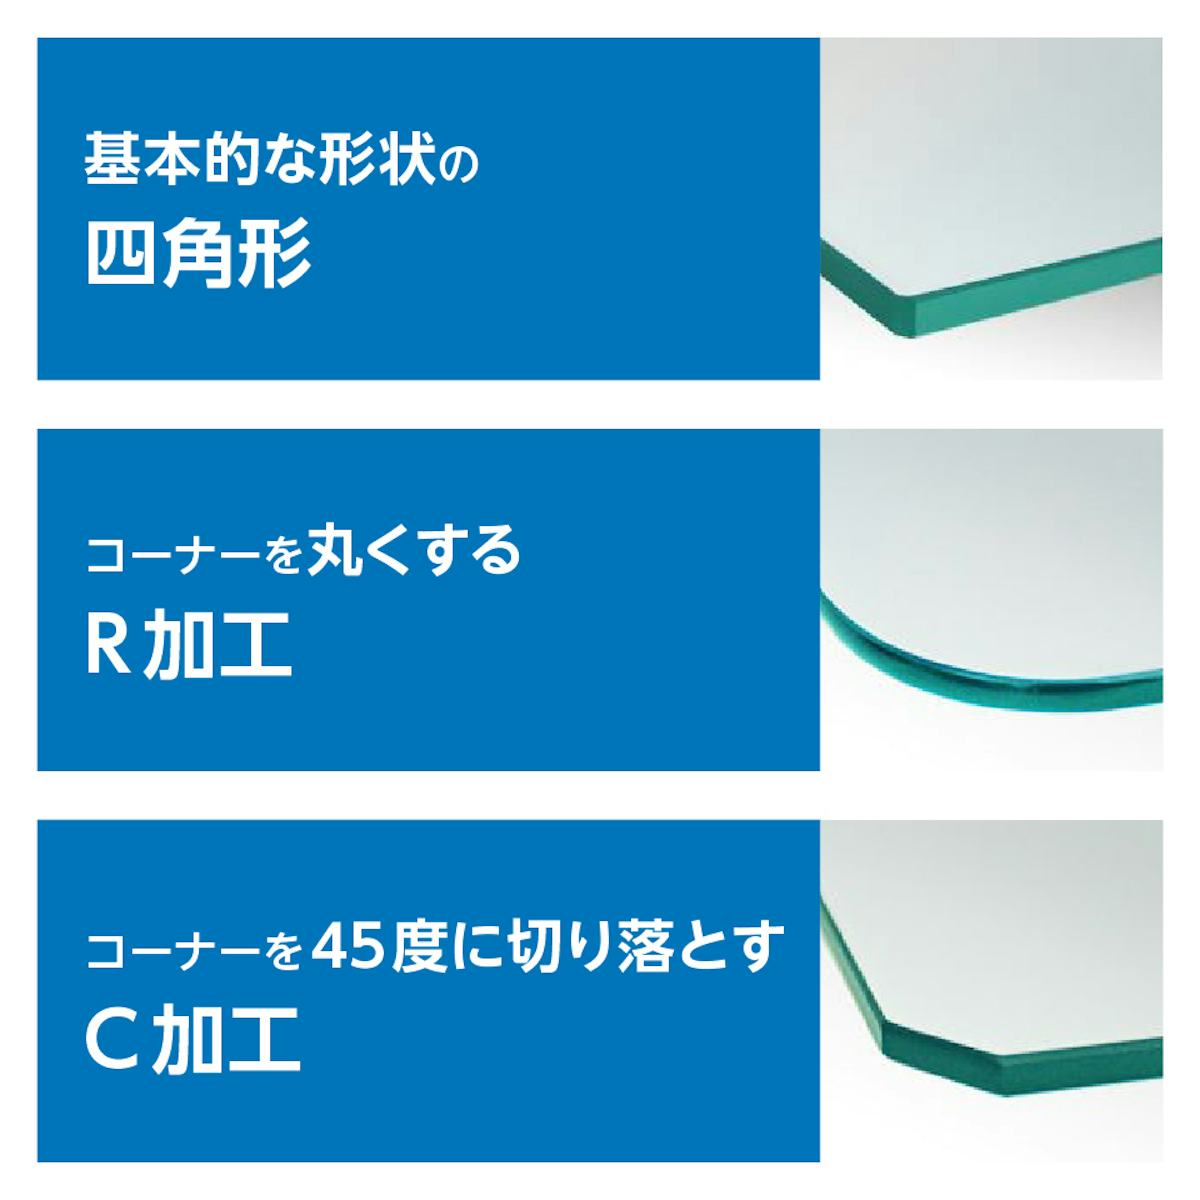 「強化ガラス：棚受けダボセット(ガラス地用)」で使うガラス棚板は、角をR加工やC加工できる